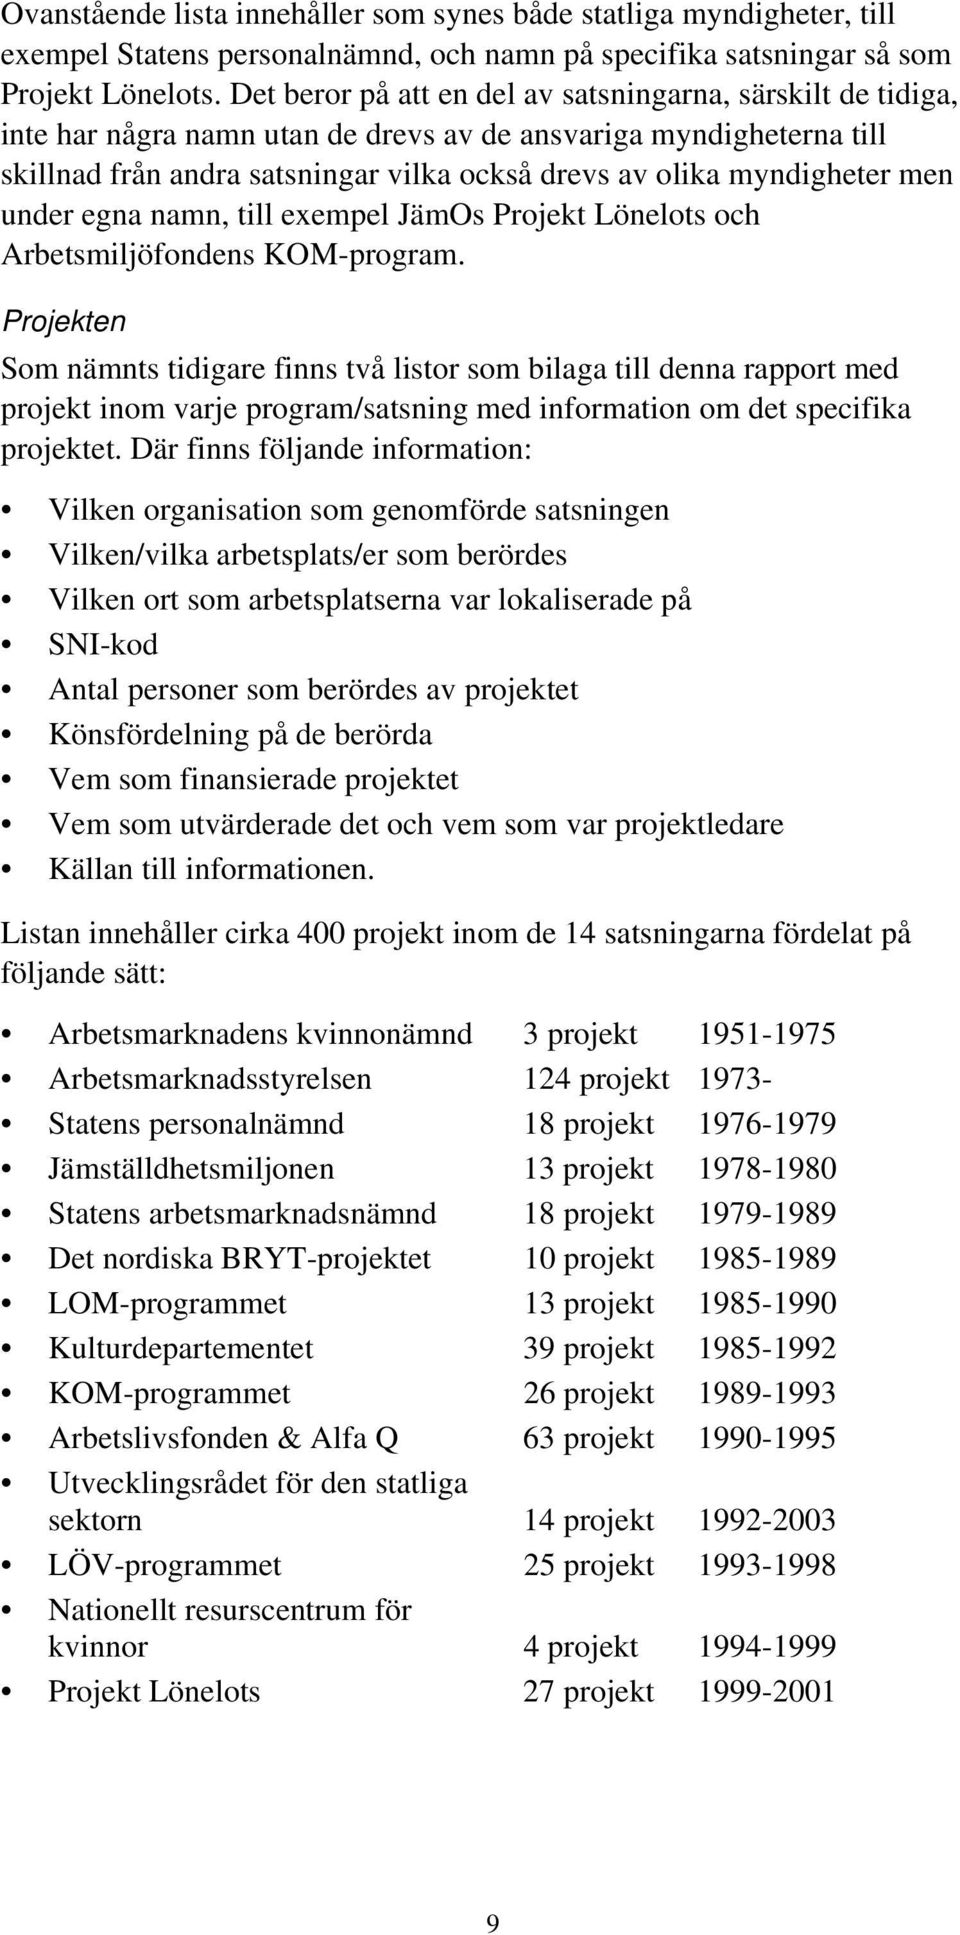 till exempel JämOs Projekt Löelots och Arbetsmiljöfos KOM-program.